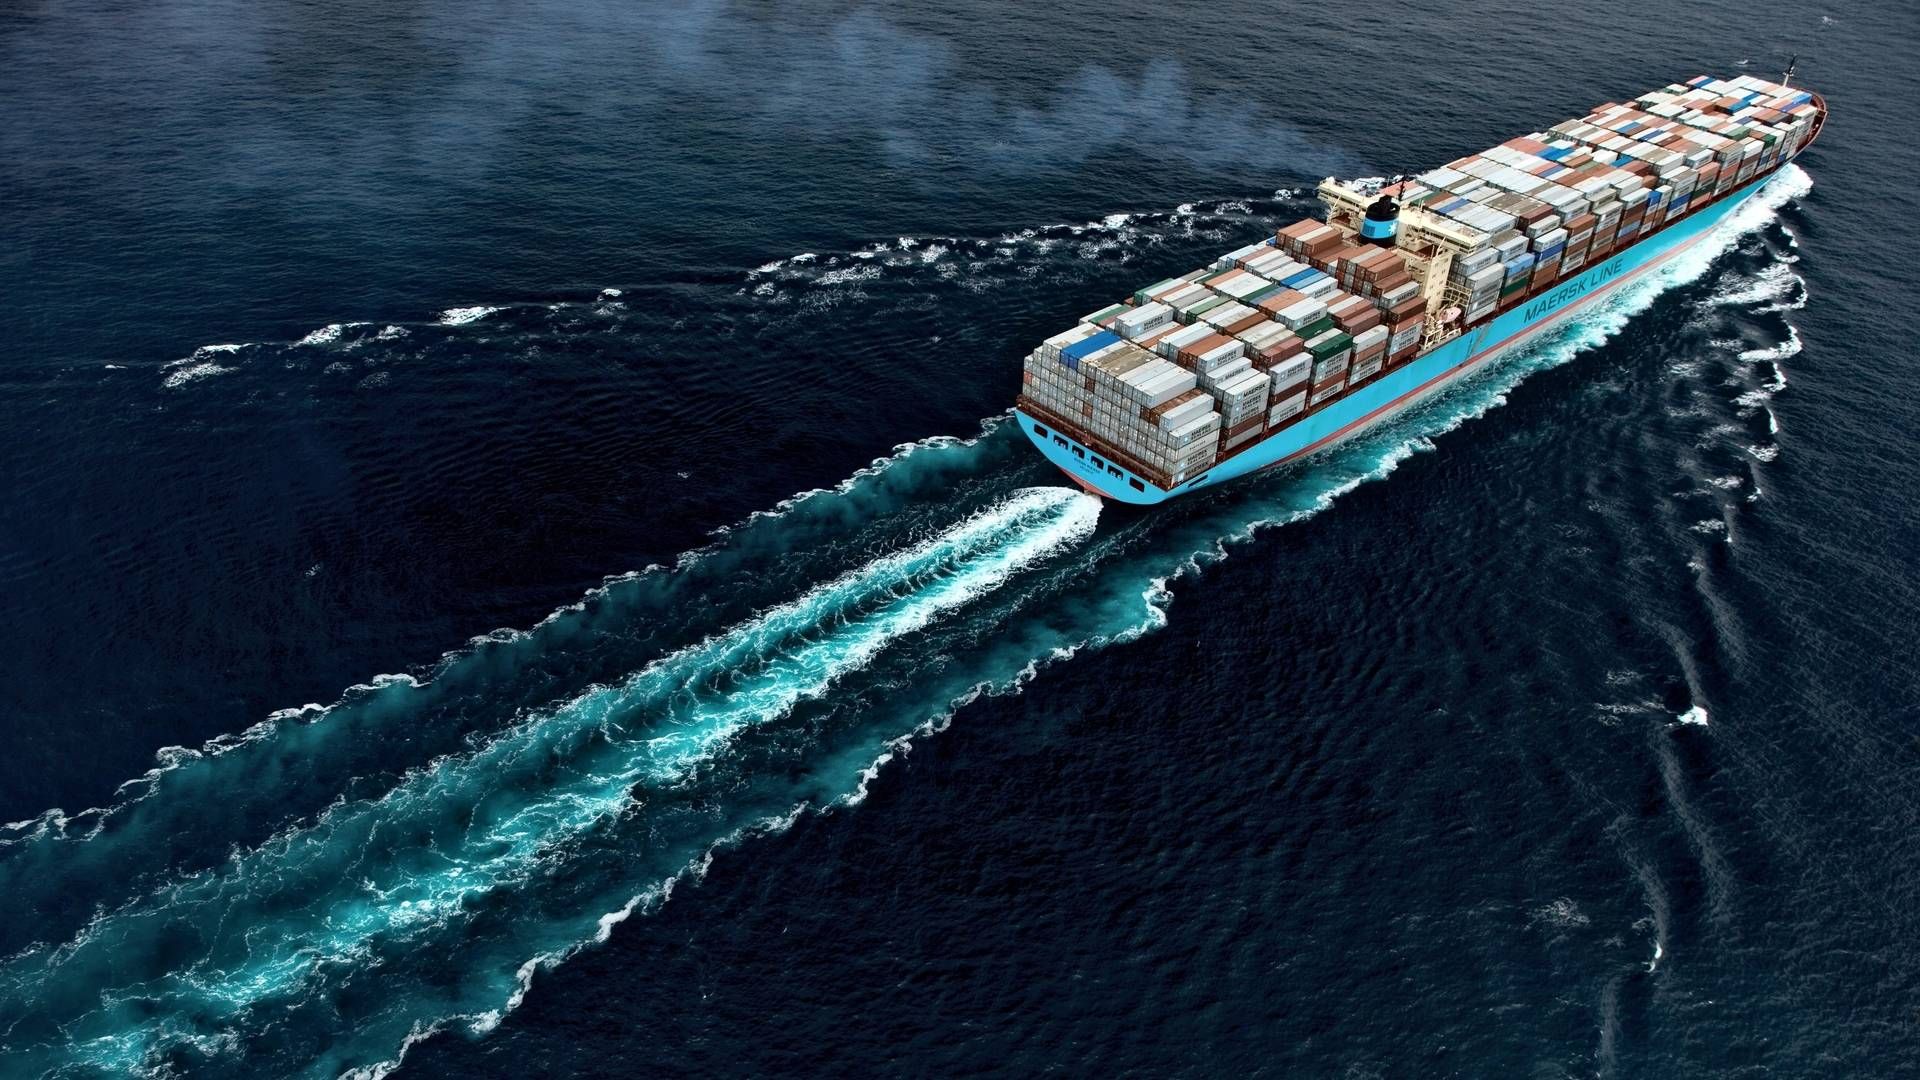 Maersk er ikke et teknologiselskab, der tilfældigvis opererer skibe, mener et bestyrelsesmedlem. | Foto: PR / Maersk